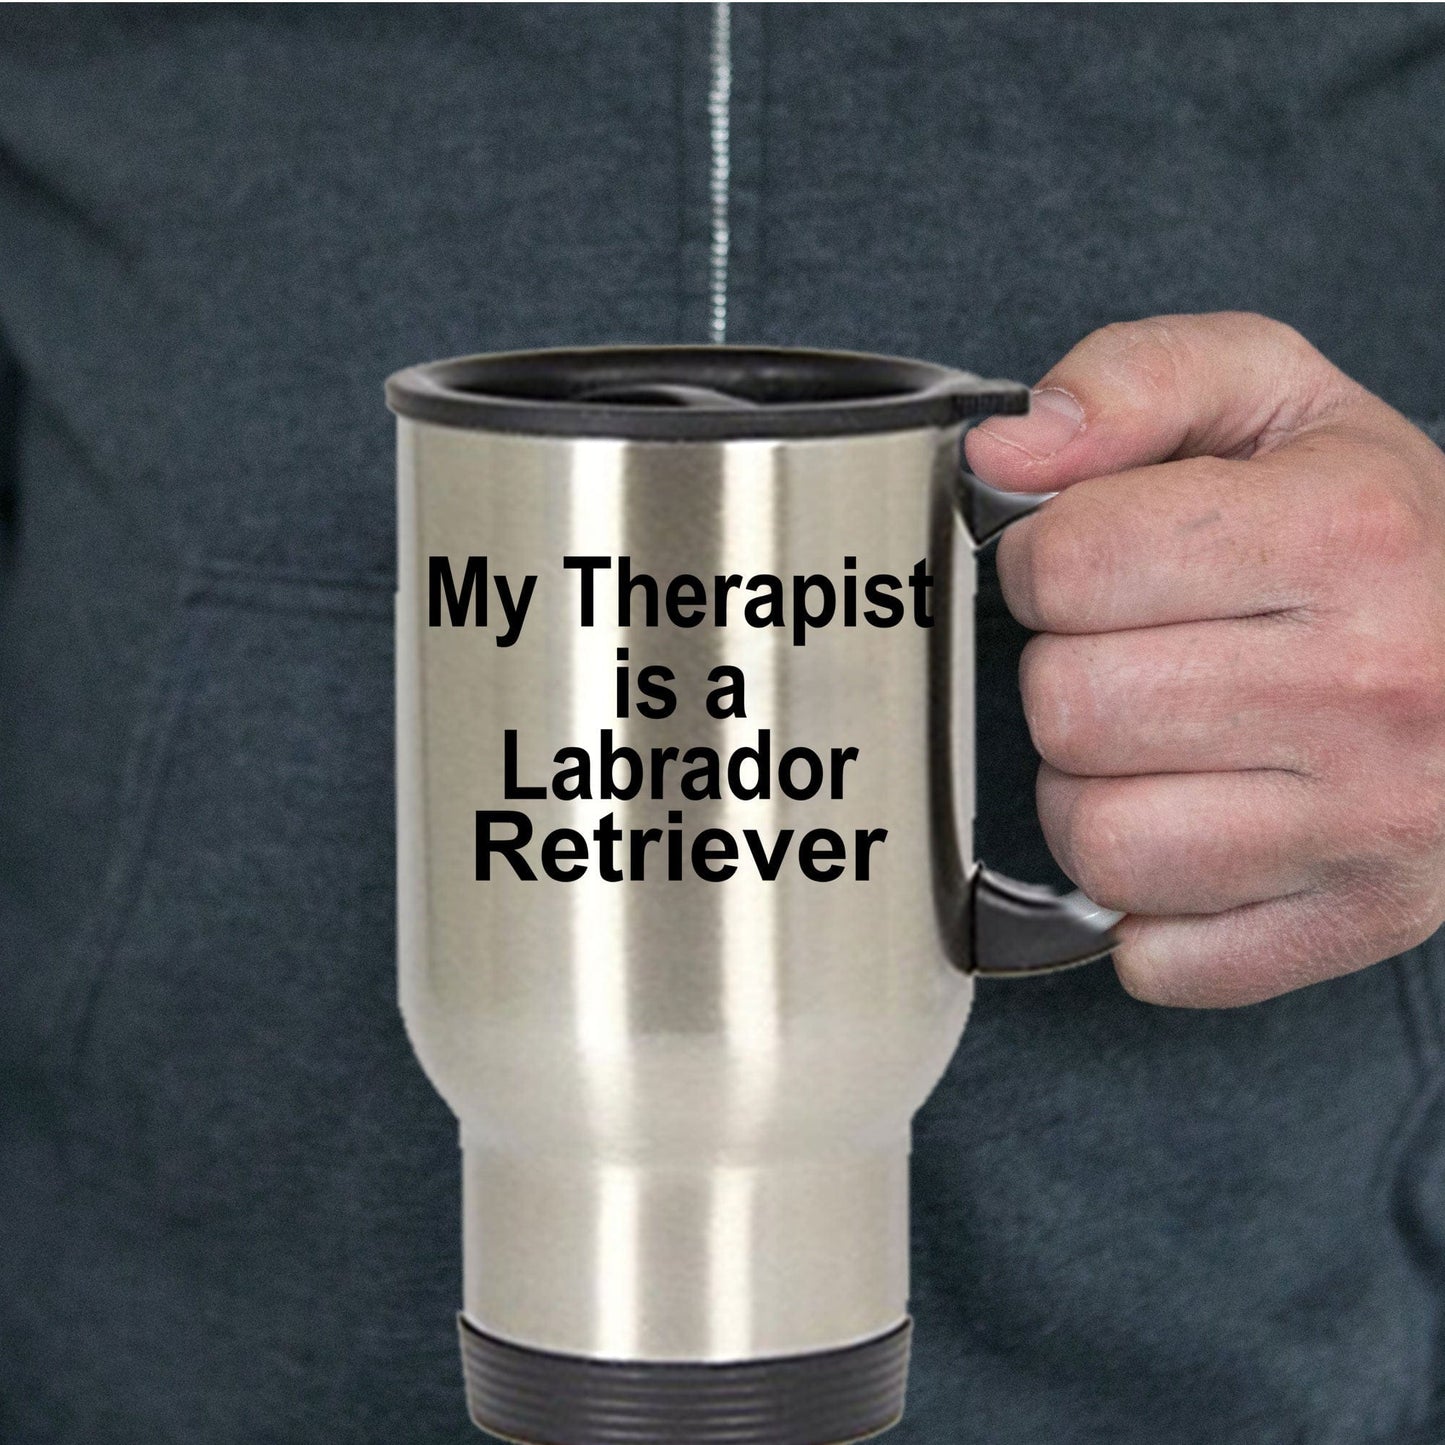 Labrador Retriever Dog Therapist Travel Coffee Mug